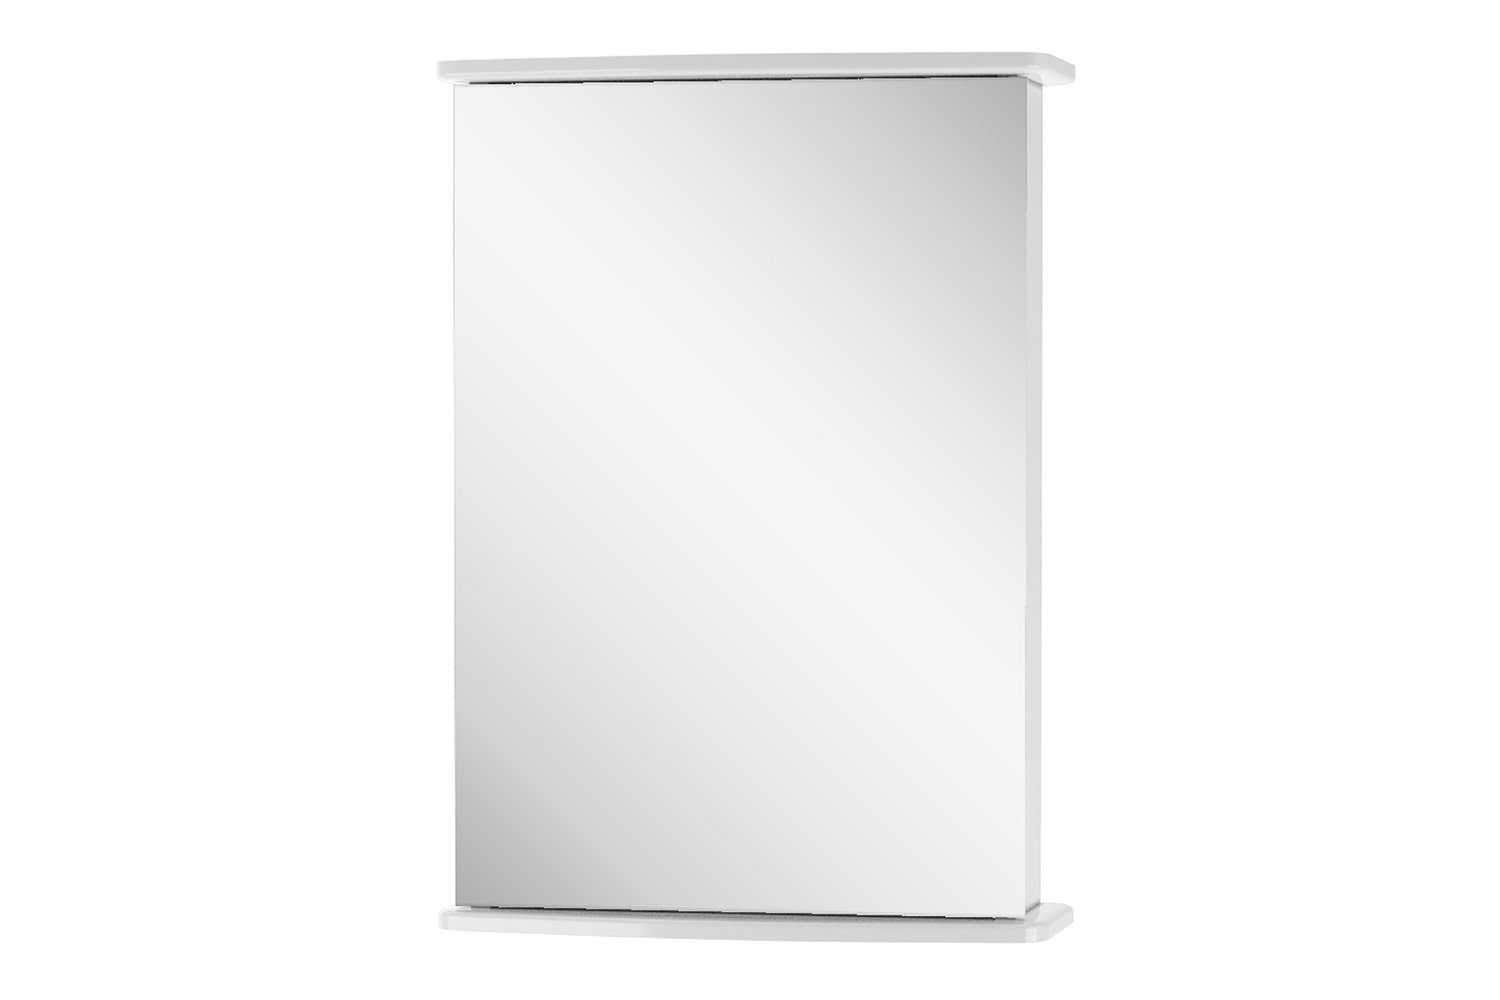 Шкаф зеркальный паола 50 см цвет белый